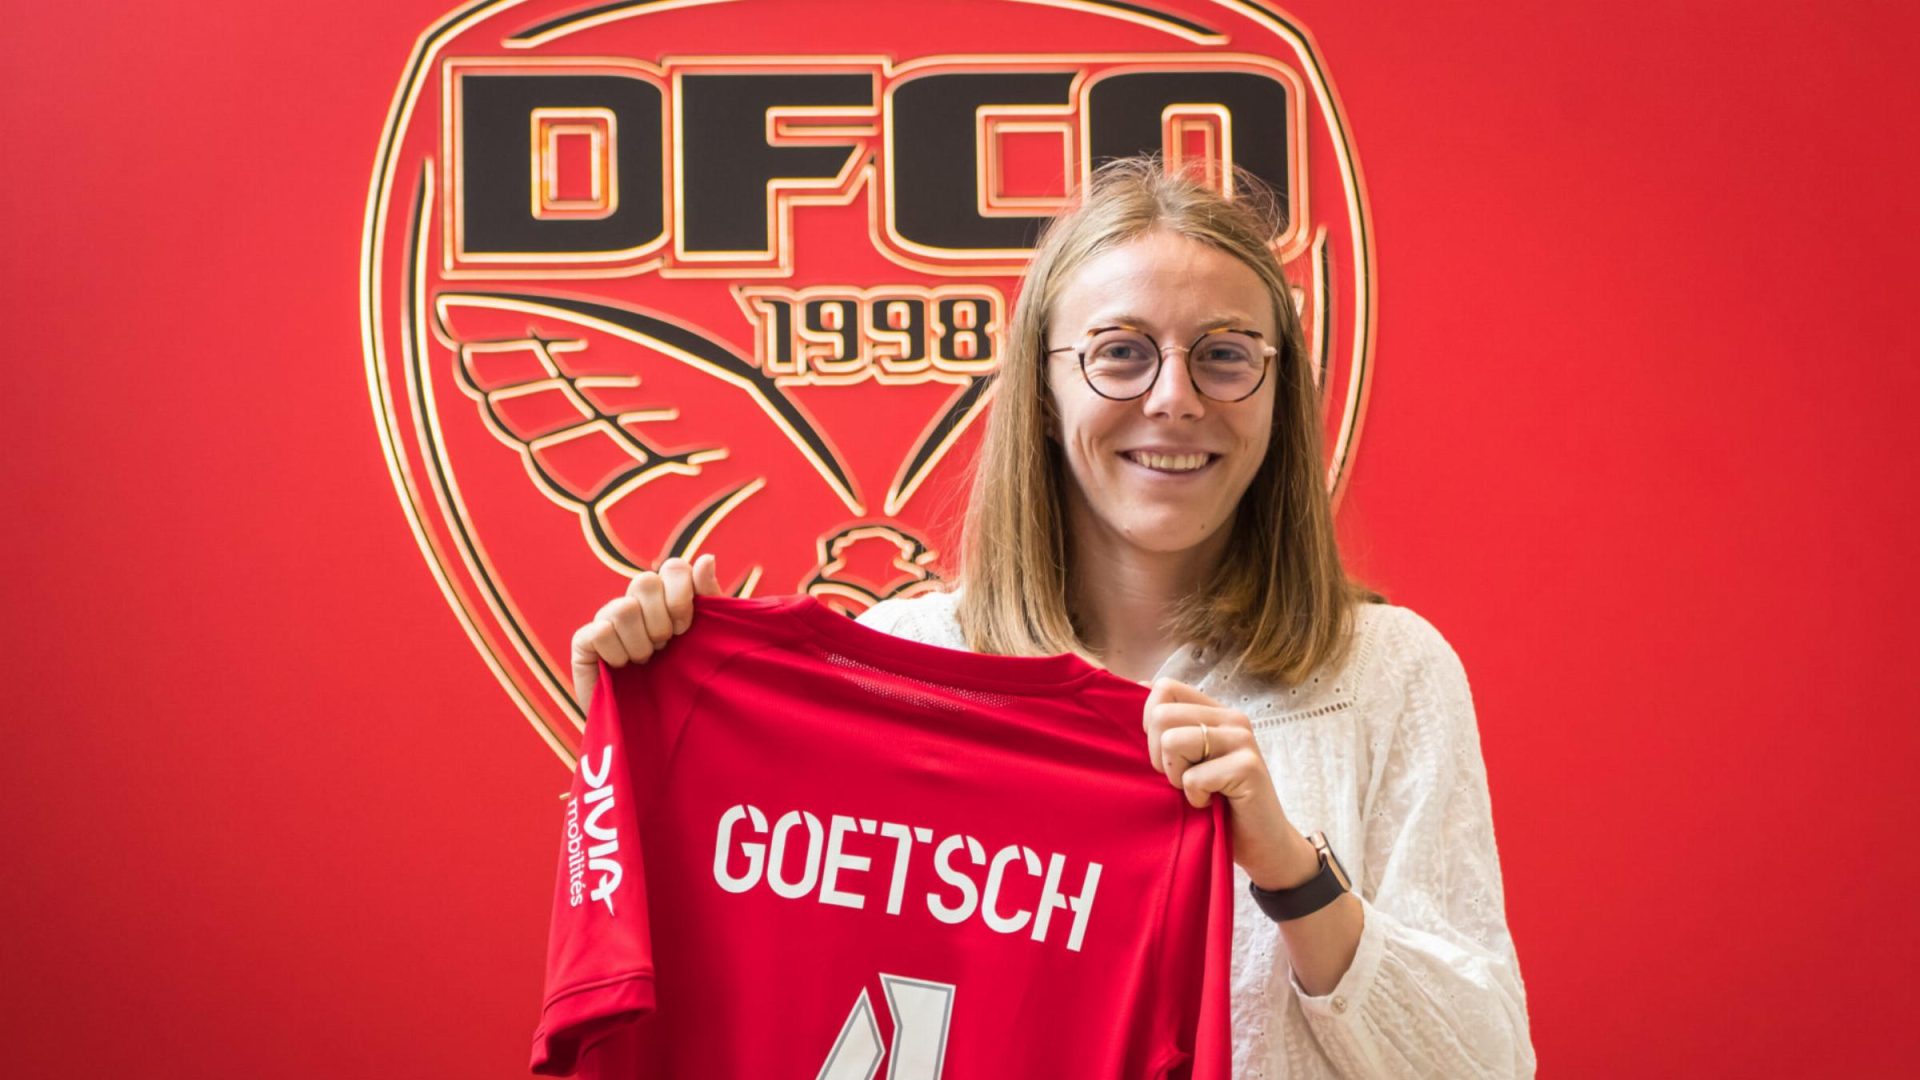 Léna Goetsch : 100 matchs et une prolongation au DFCO